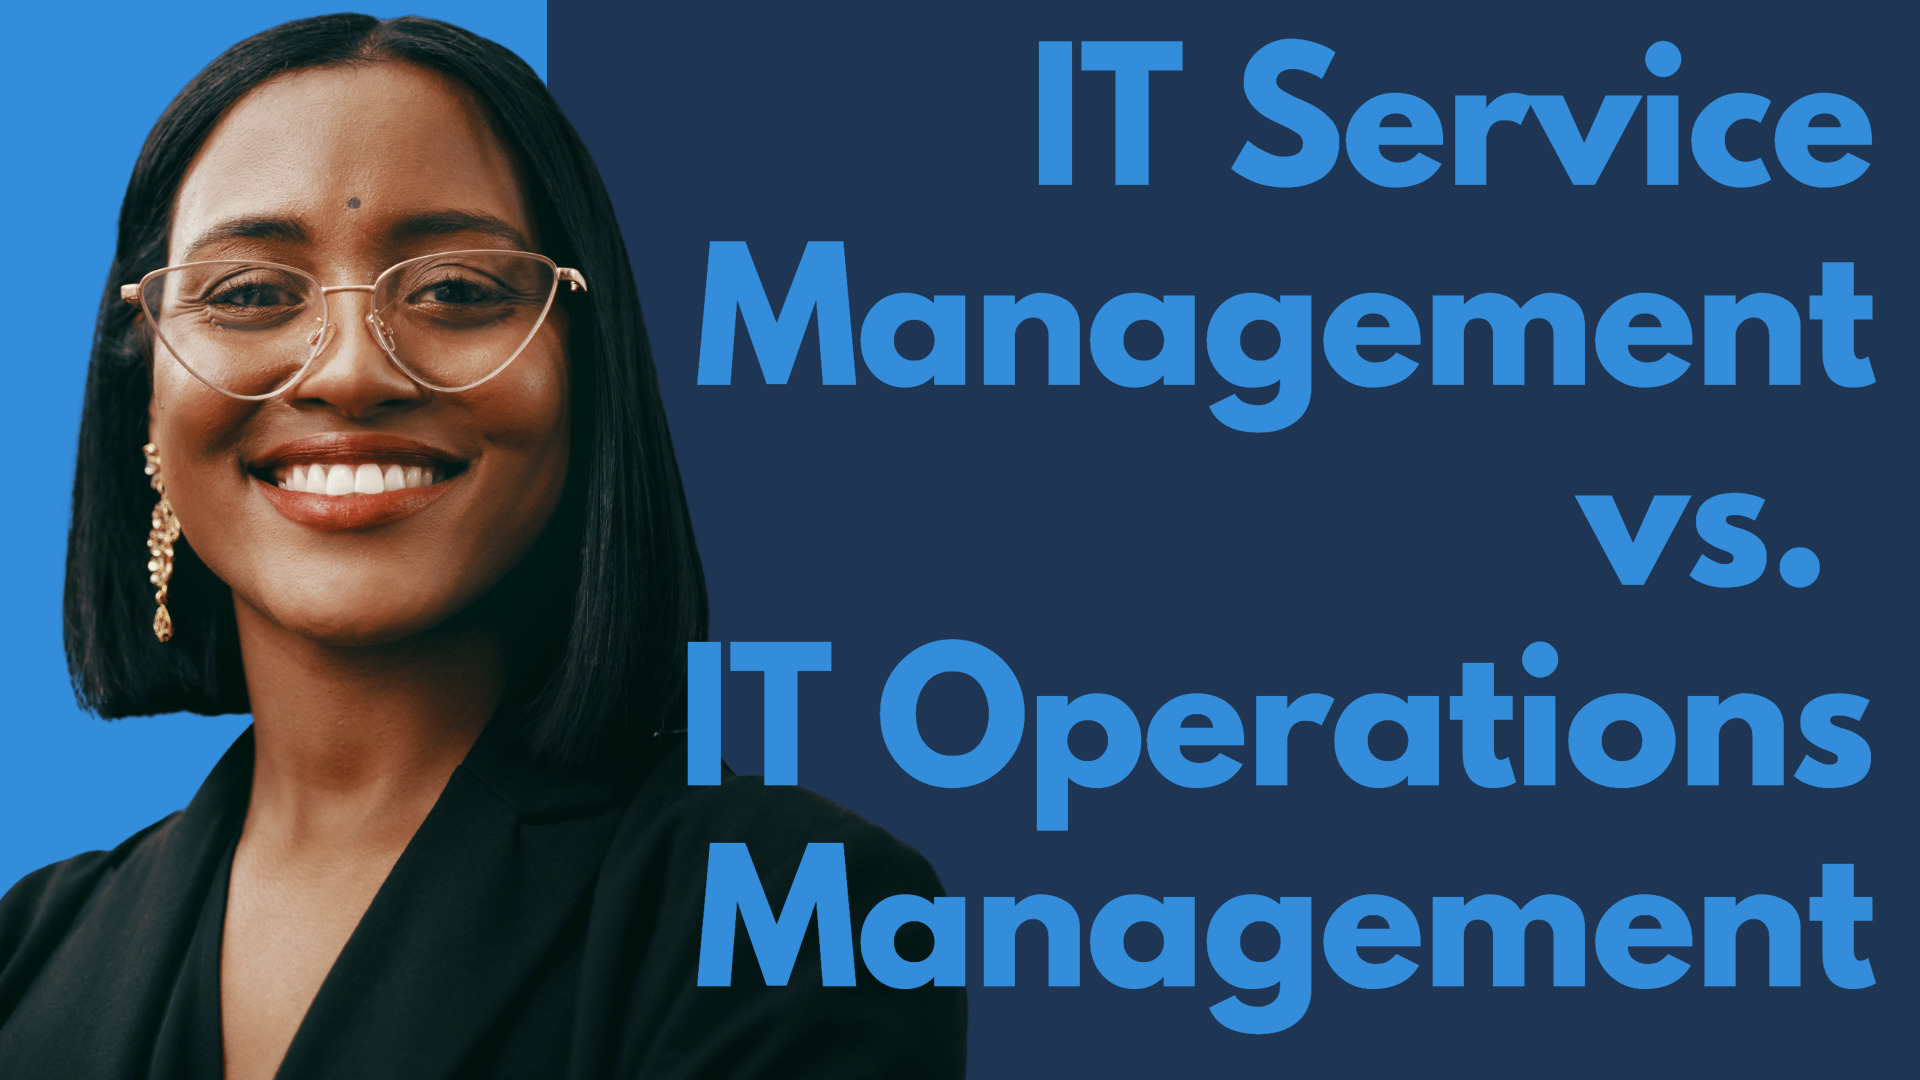 IT Service Management vs. IT Operations Management